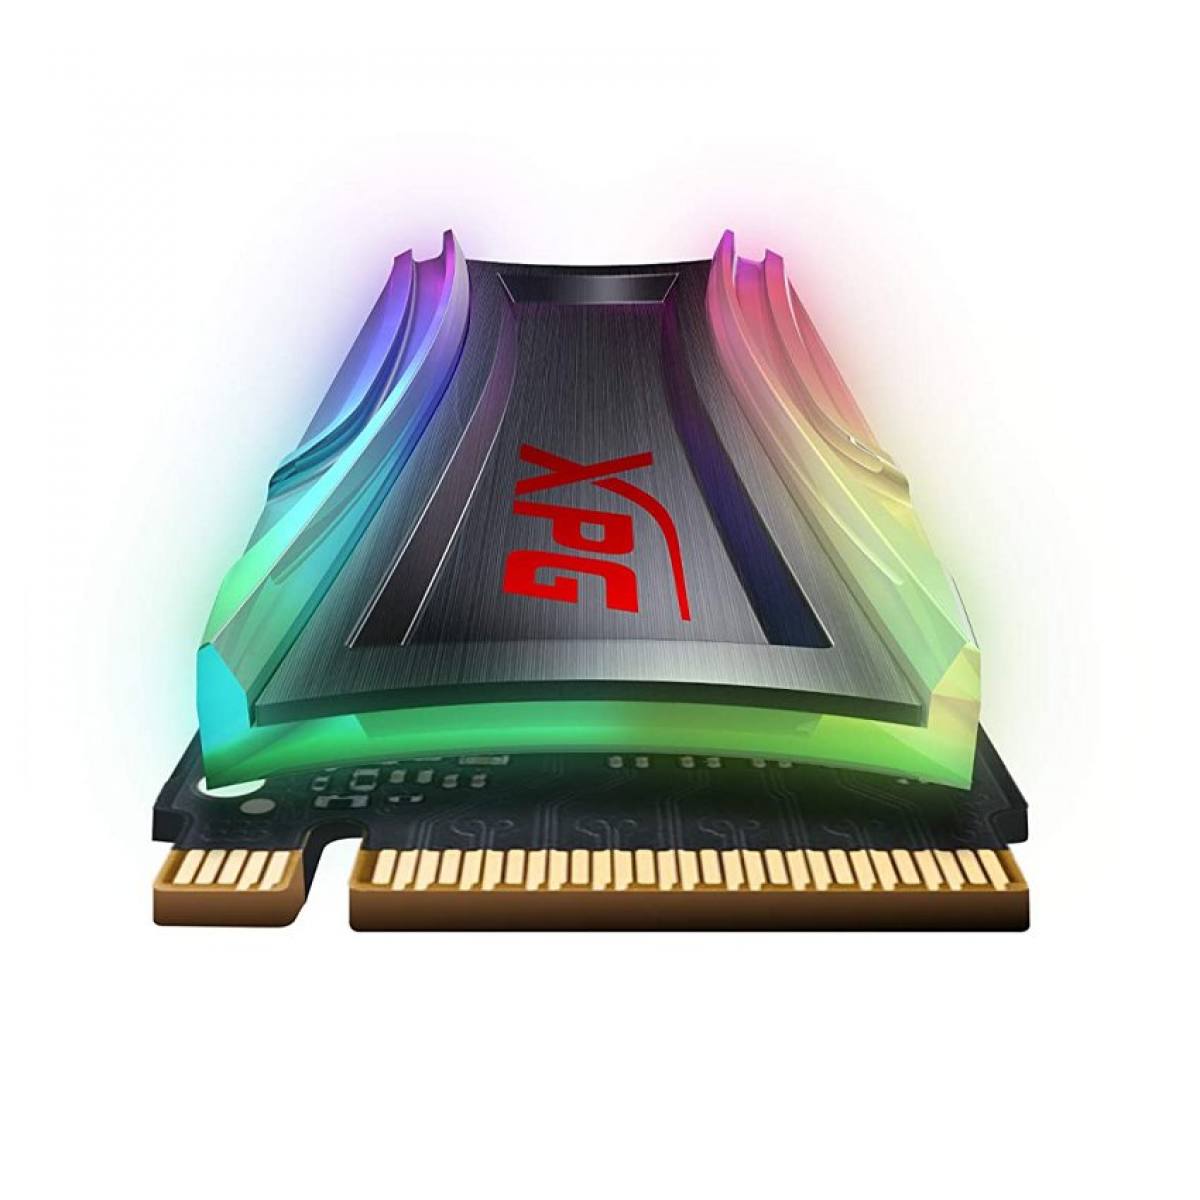 SSD ADATA XPG S40G 2TB M2 PCIe RGB